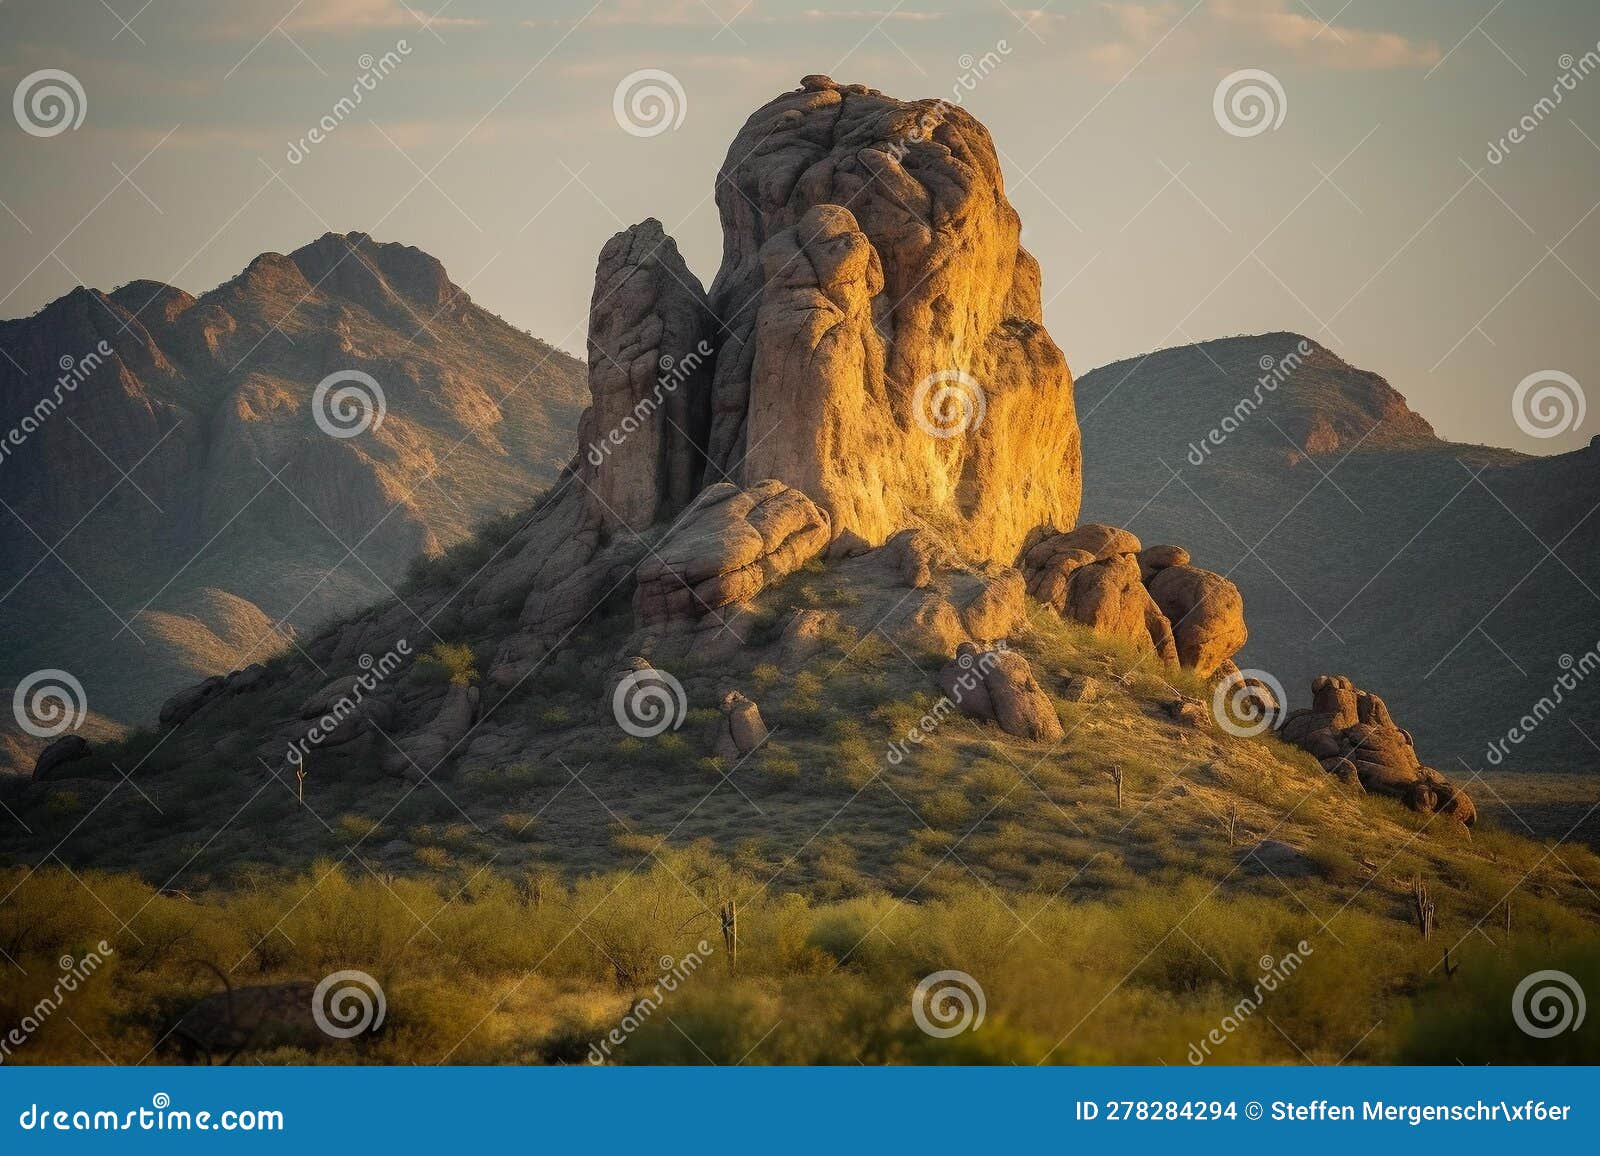 majestic rock formation in golden desert landscape